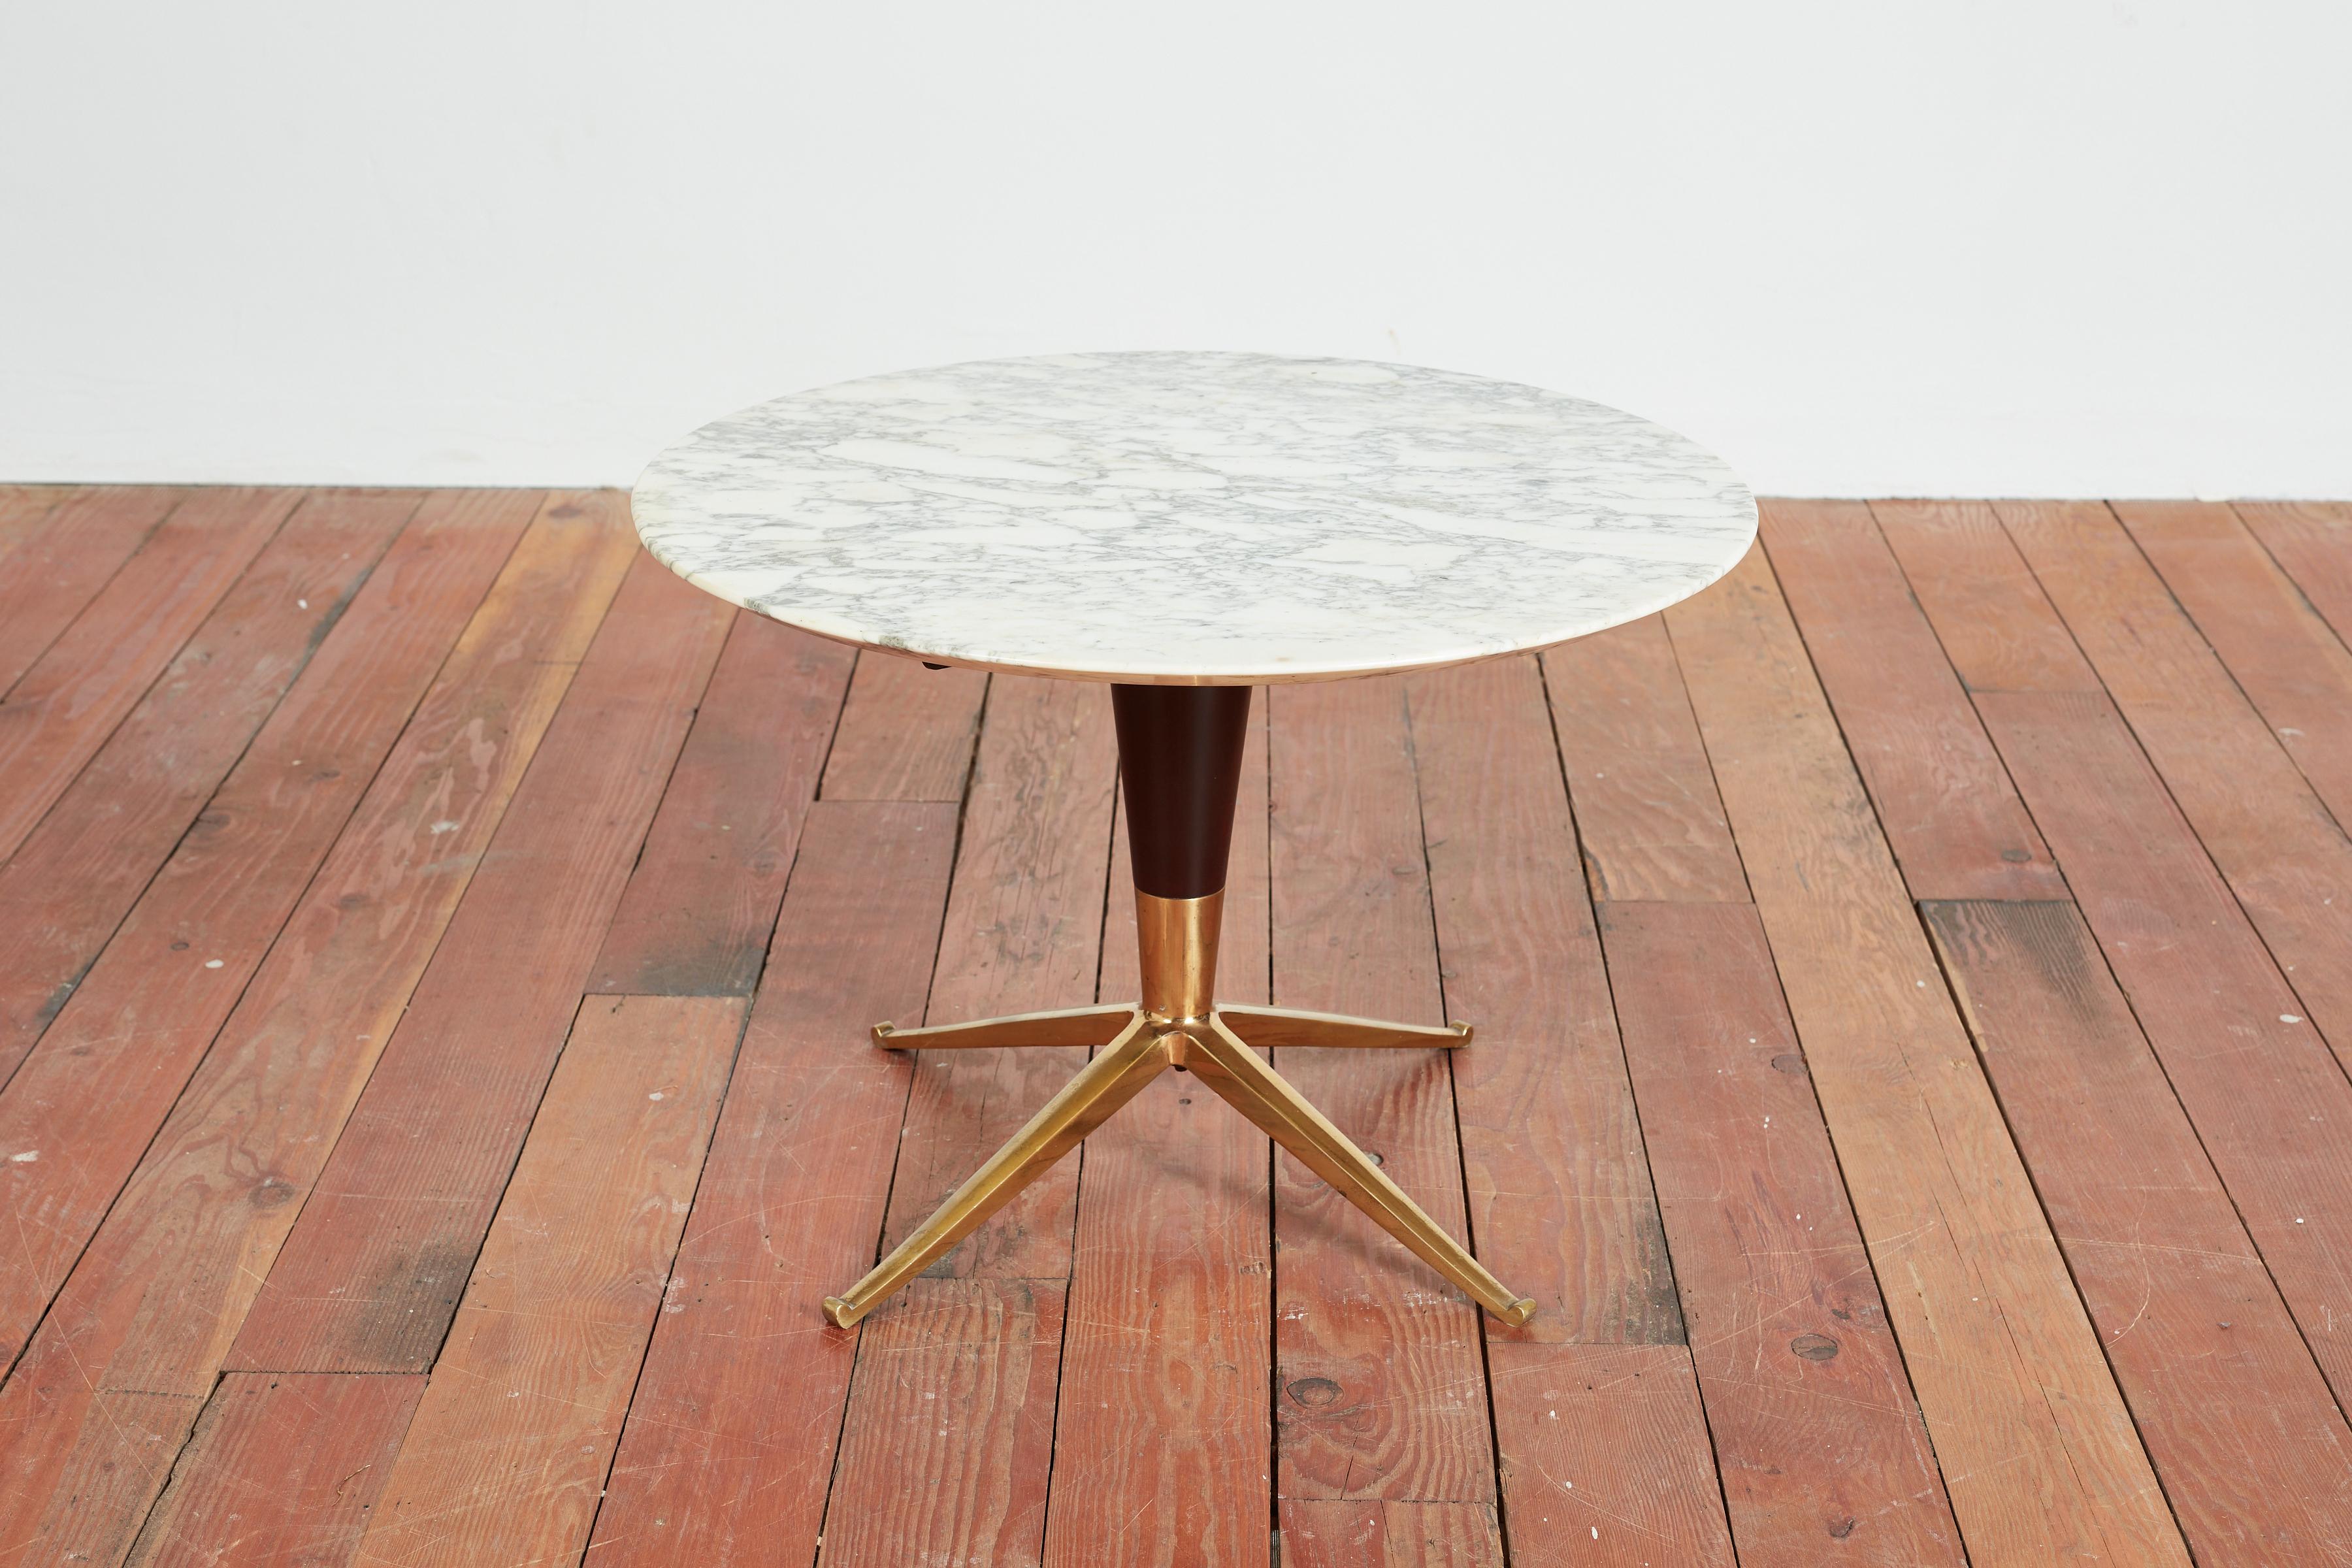 Belle table italienne des années 1950. 
Petite échelle avec une base sculpturale en laiton massif, un bois cannelé et un magnifique plateau en marbre.